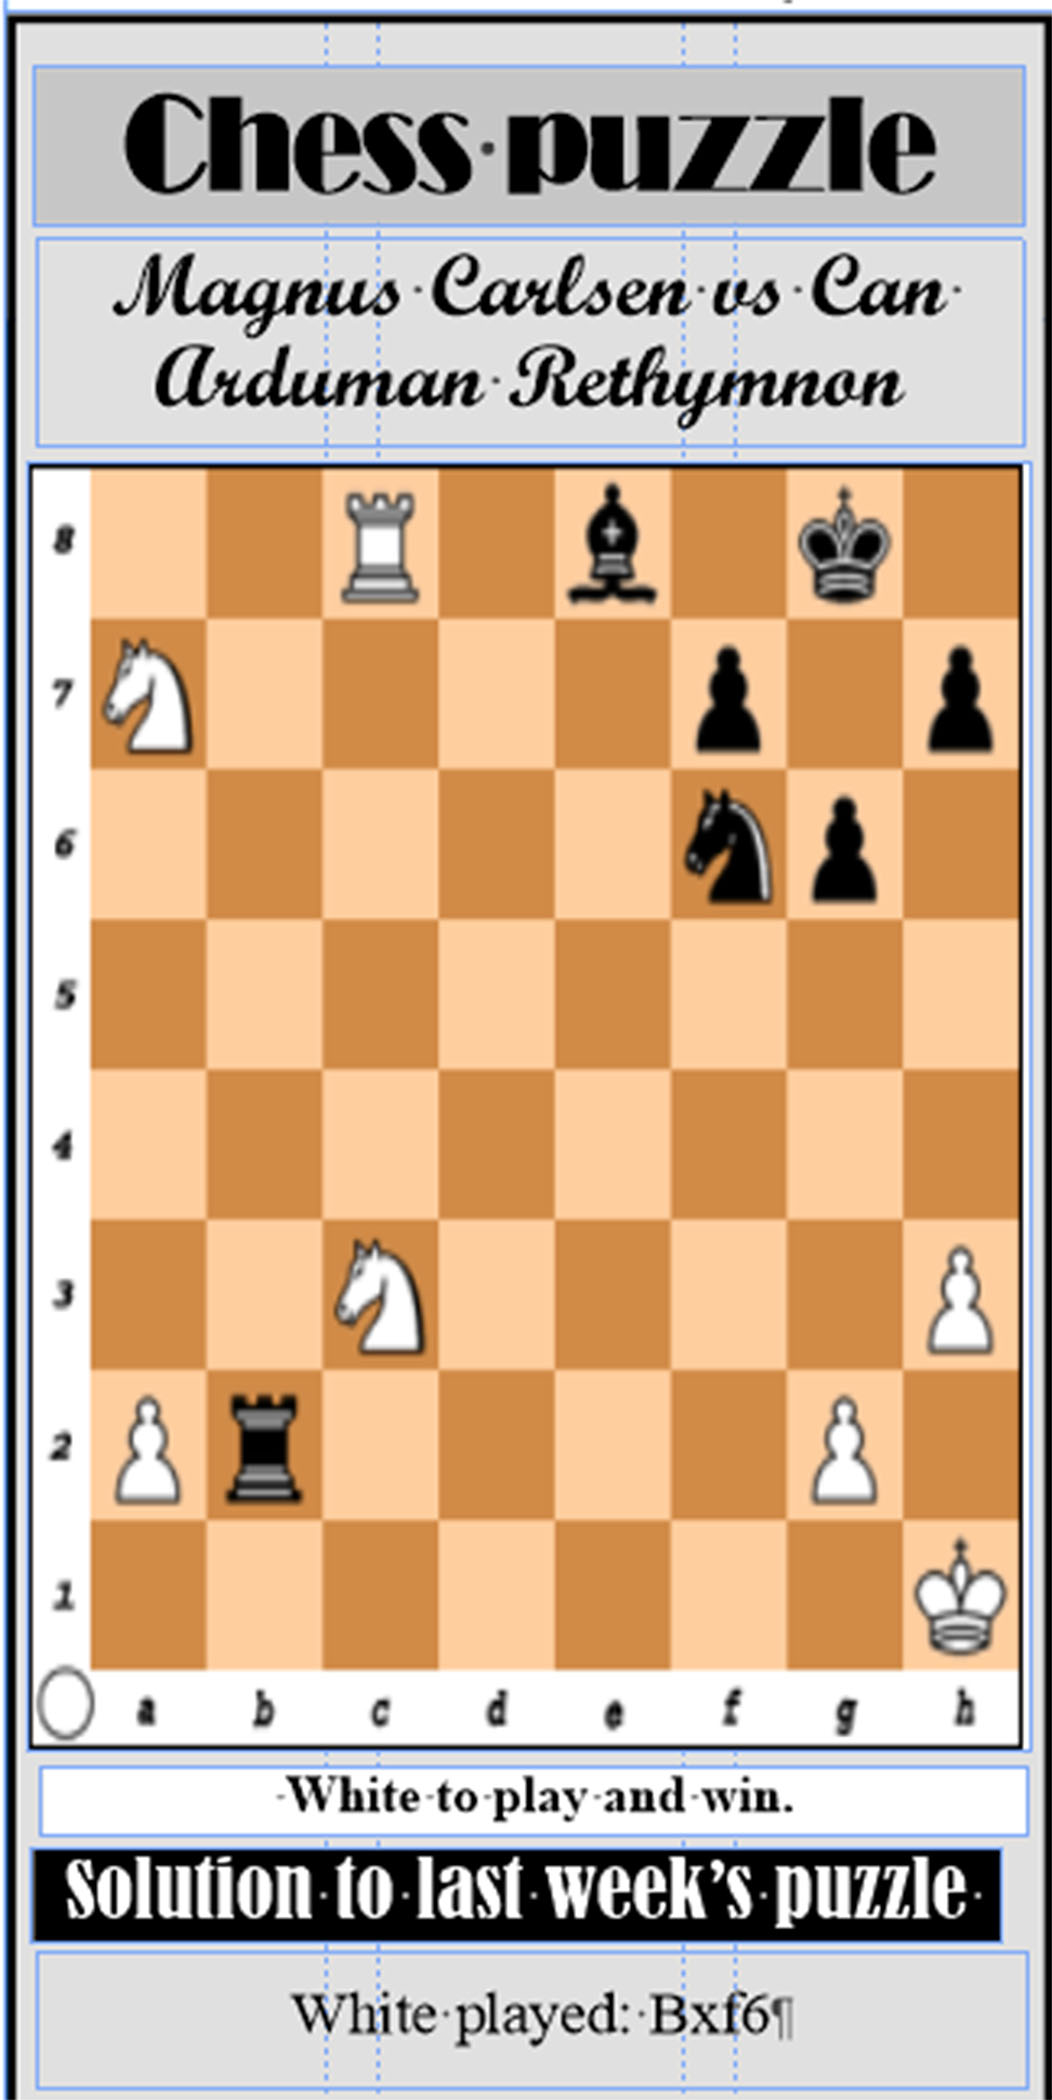 Carlsen-Karjakin 2016, Karpov-Kasparov 1985: a comparison